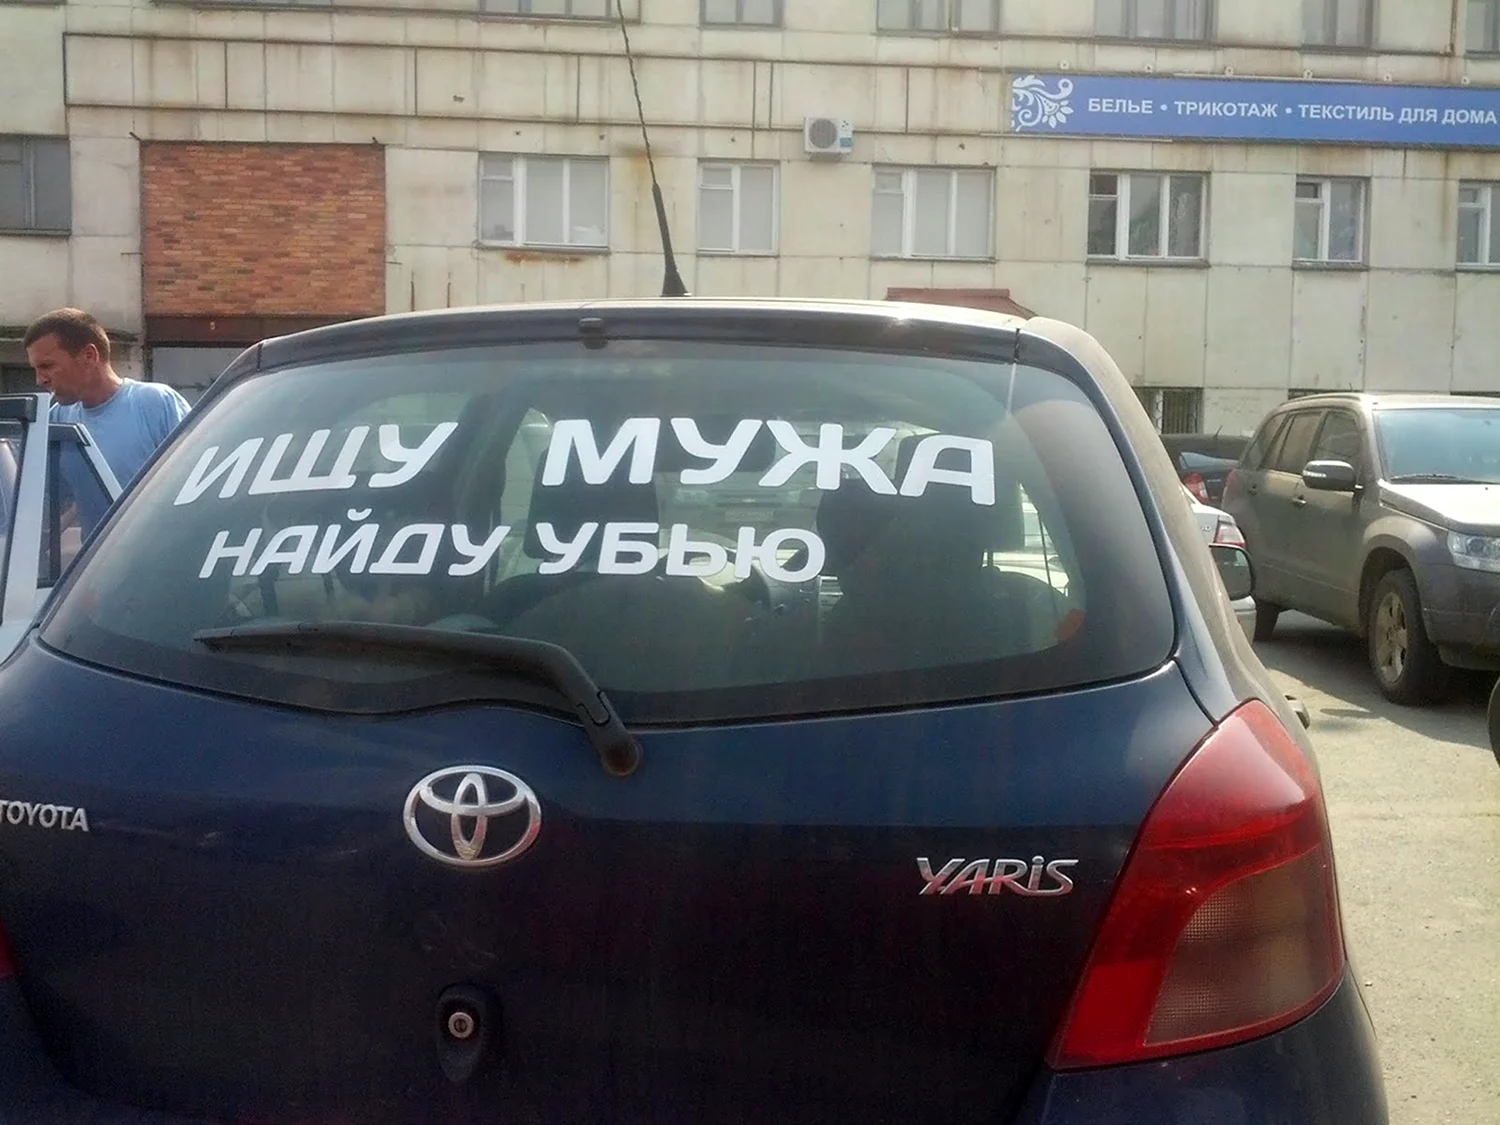 Смешные надписи на стекло автомобиля